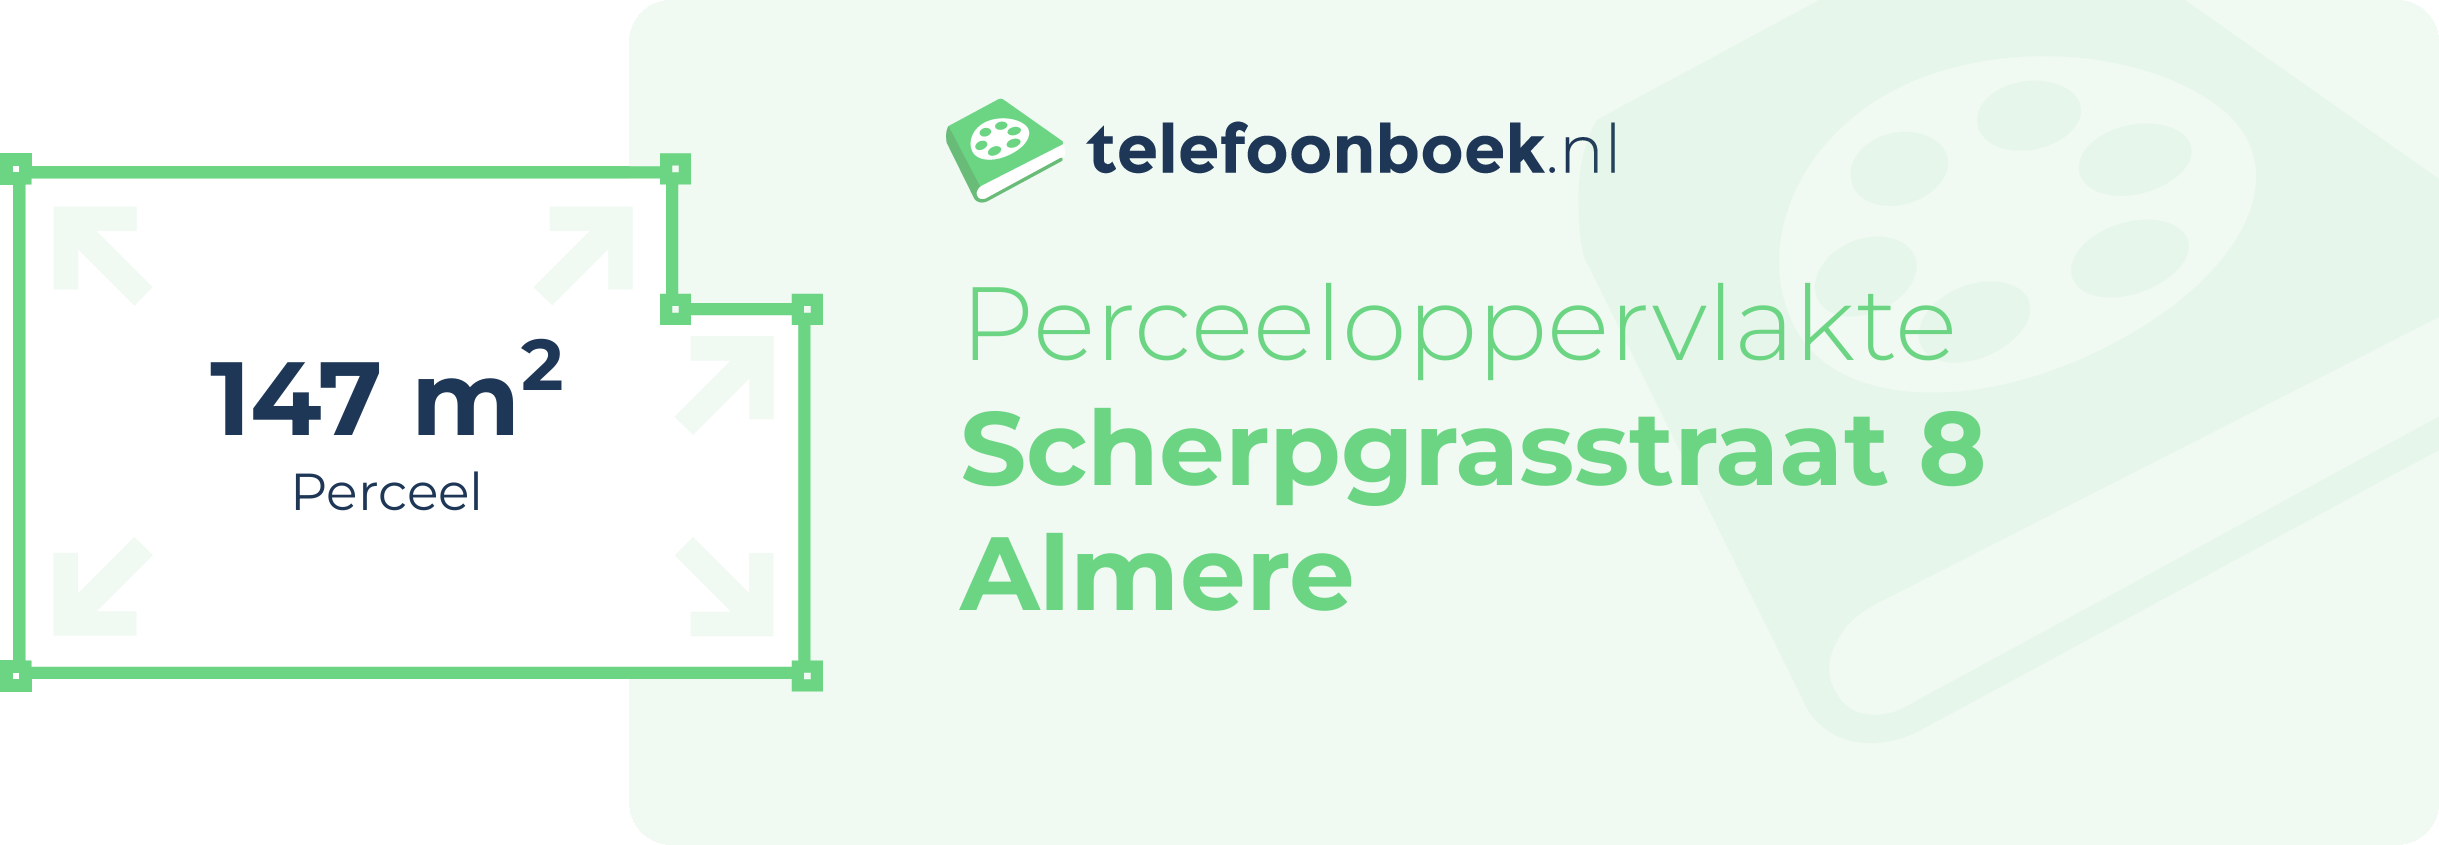 Perceeloppervlakte Scherpgrasstraat 8 Almere